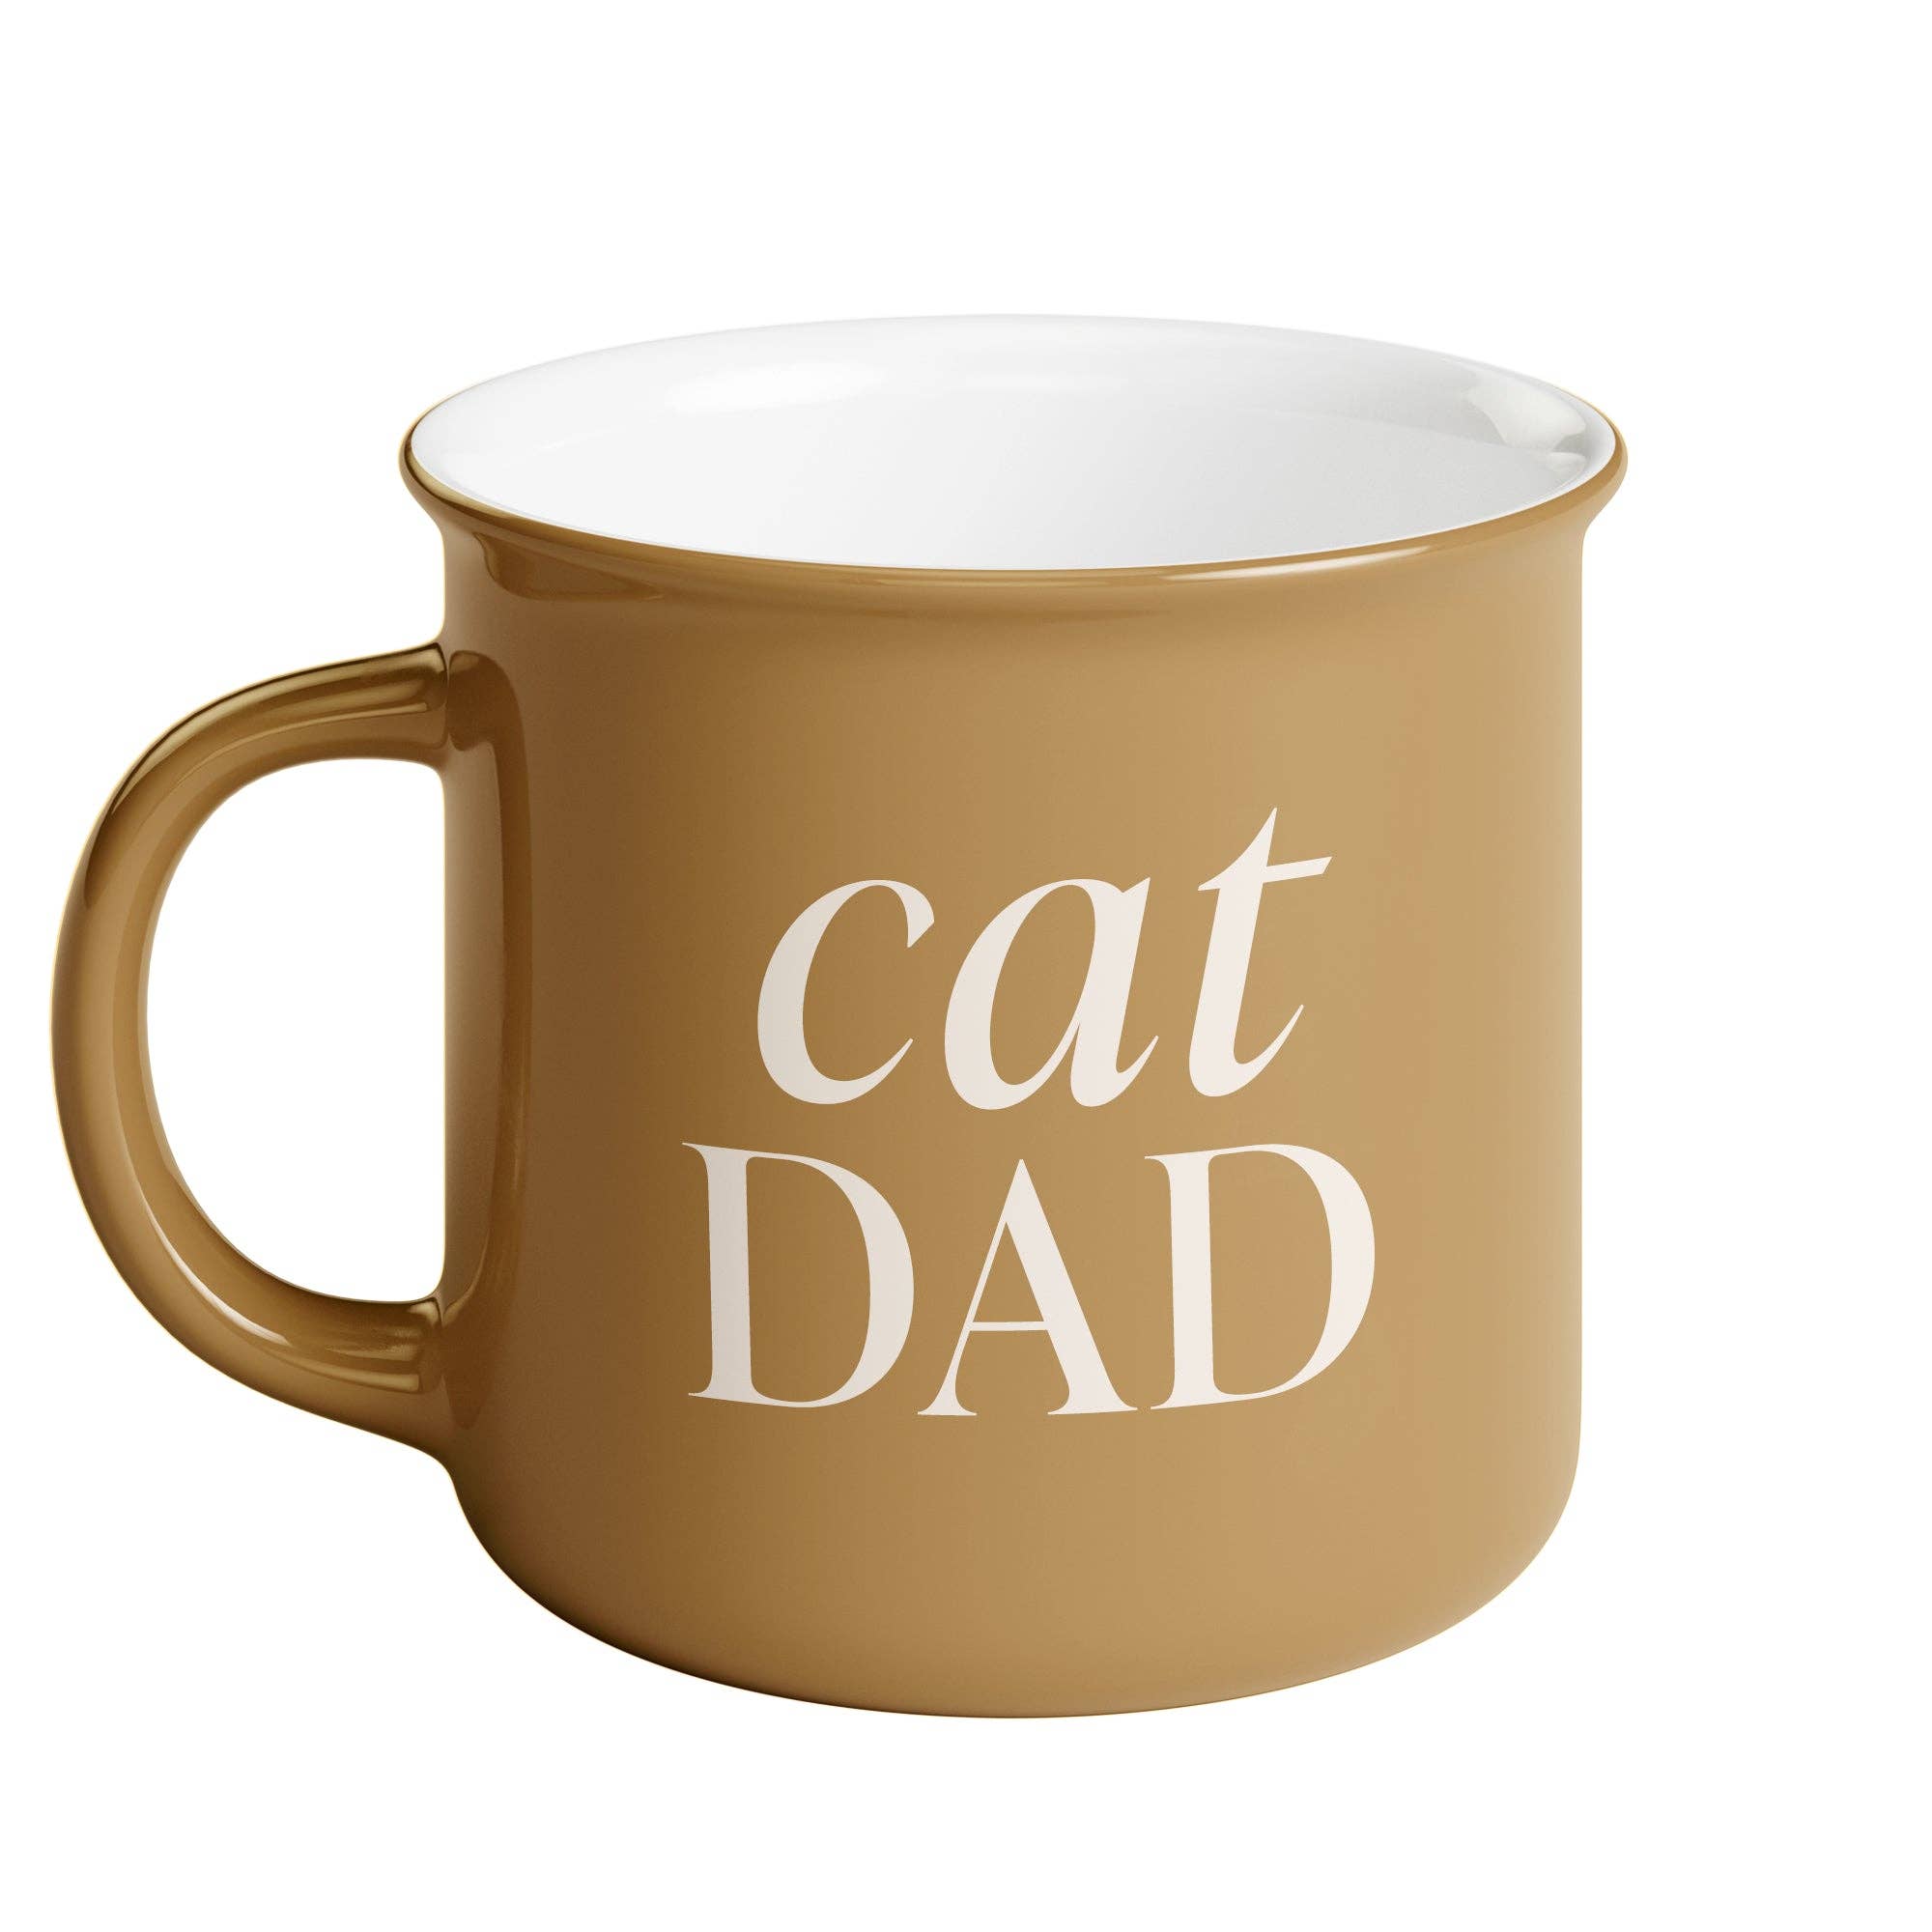 *NEW* Cat Dad 11 oz Campfire Coffee Mug - Home Decor